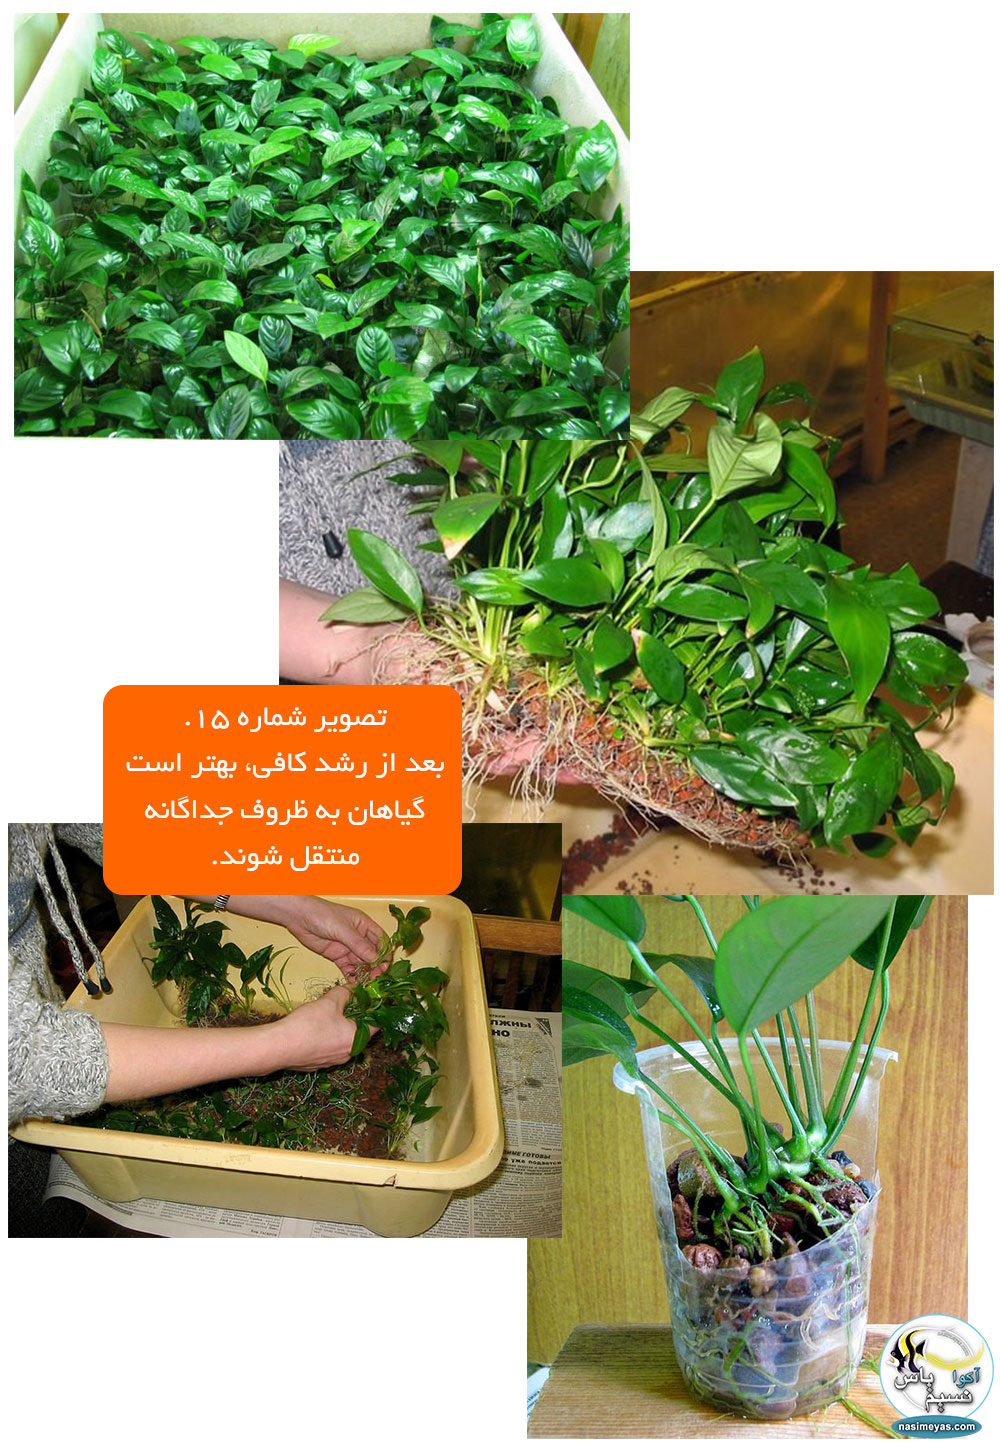 بعد از رشد کافی، بهتر است گیاهان به ظروف جداگانه منتقل شوند.